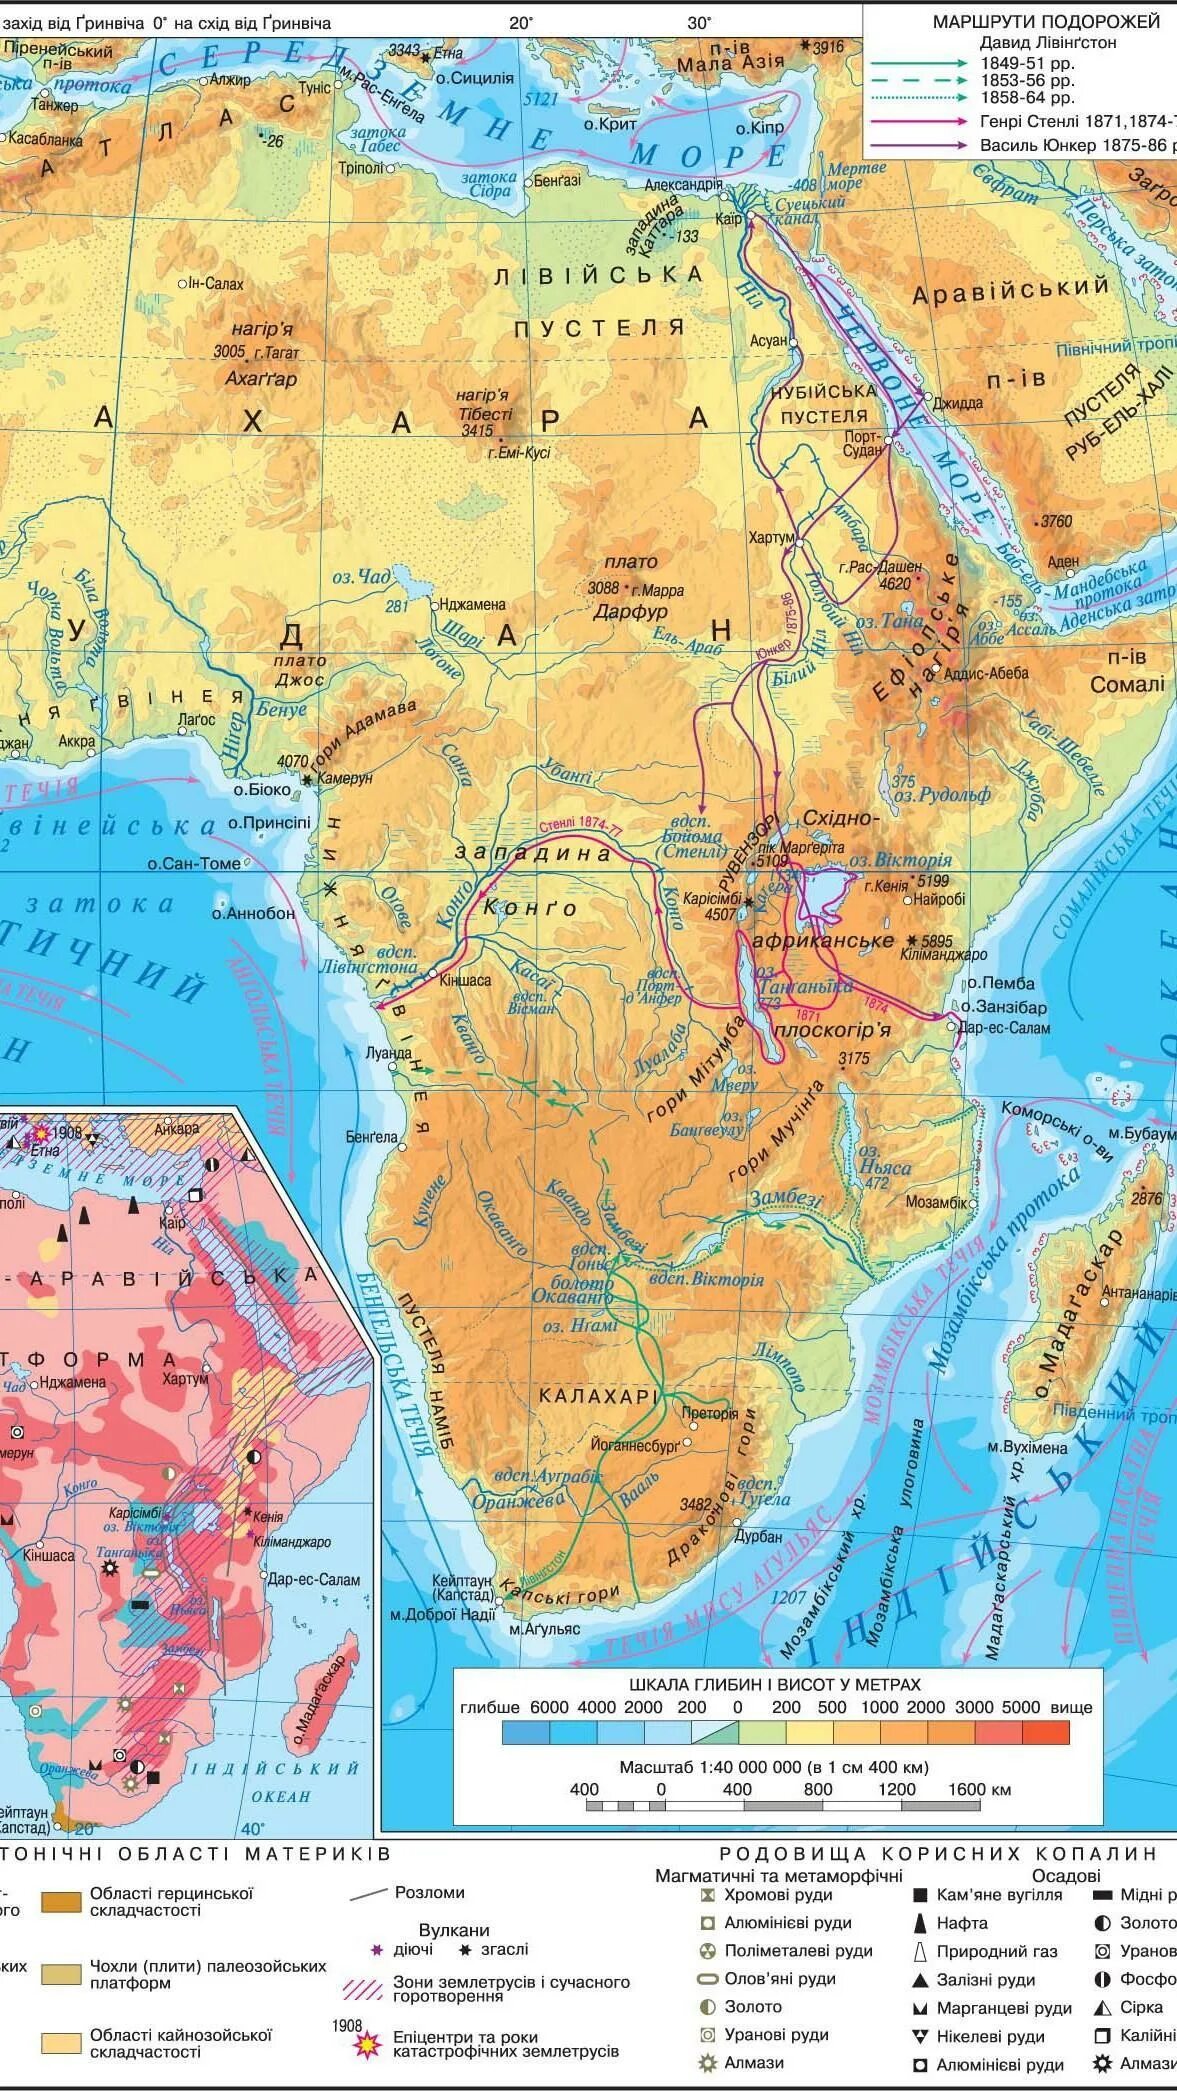 Самая высокая точка атласа. Атласские горы на карте Африка физическая карта. Карта Африки горы атлас Драконовы капские. Атласские горы на карте Африки. Подпишите на карте Африки Атласские горы.